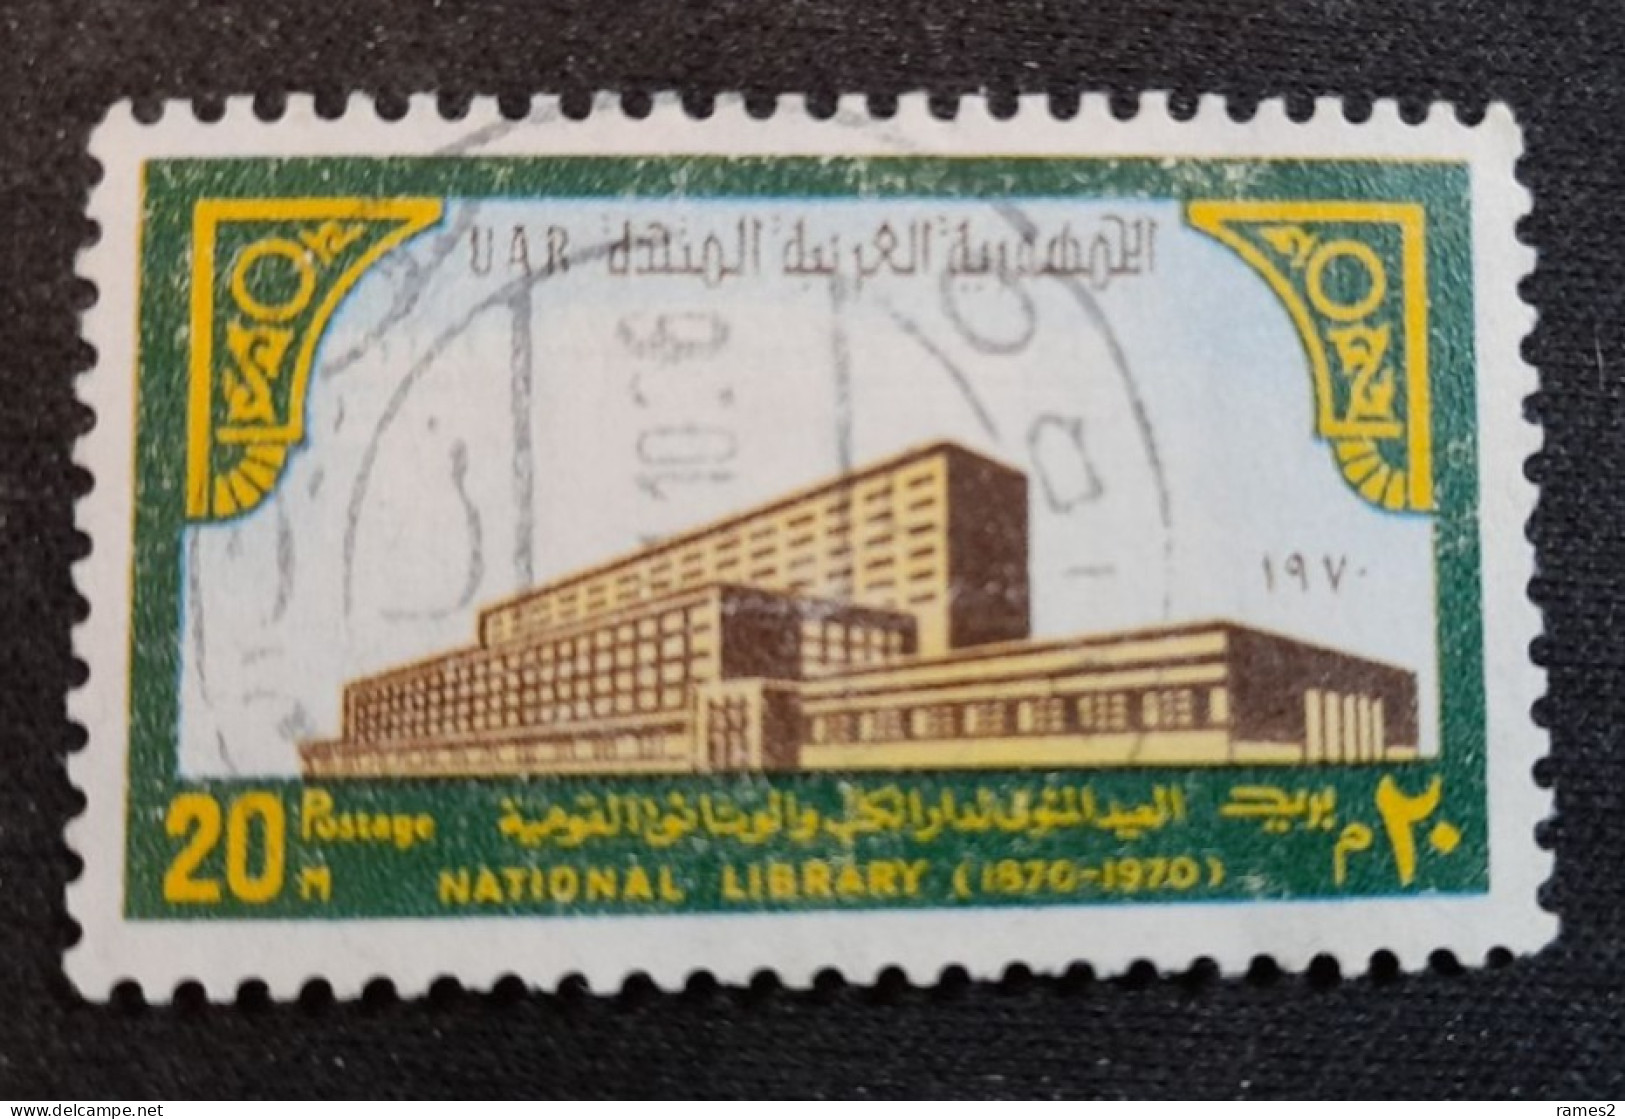 Egypte > 1953-... République > 1960-69 > Oblitérés N° 840 - Used Stamps